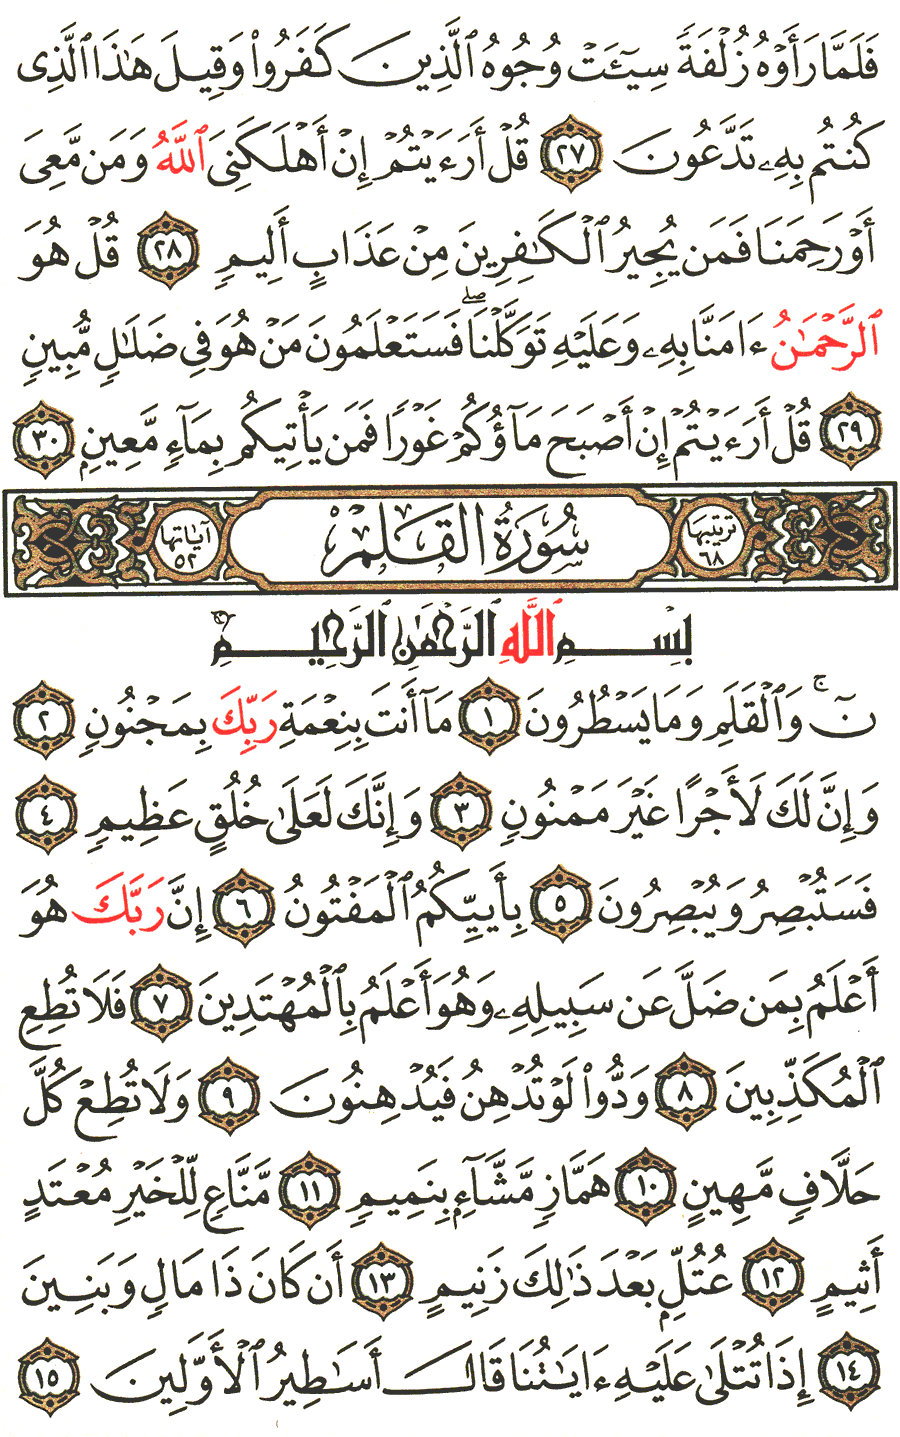 الصفحة رقم 564 من القرآن الكريم مكتوبة من المصحف